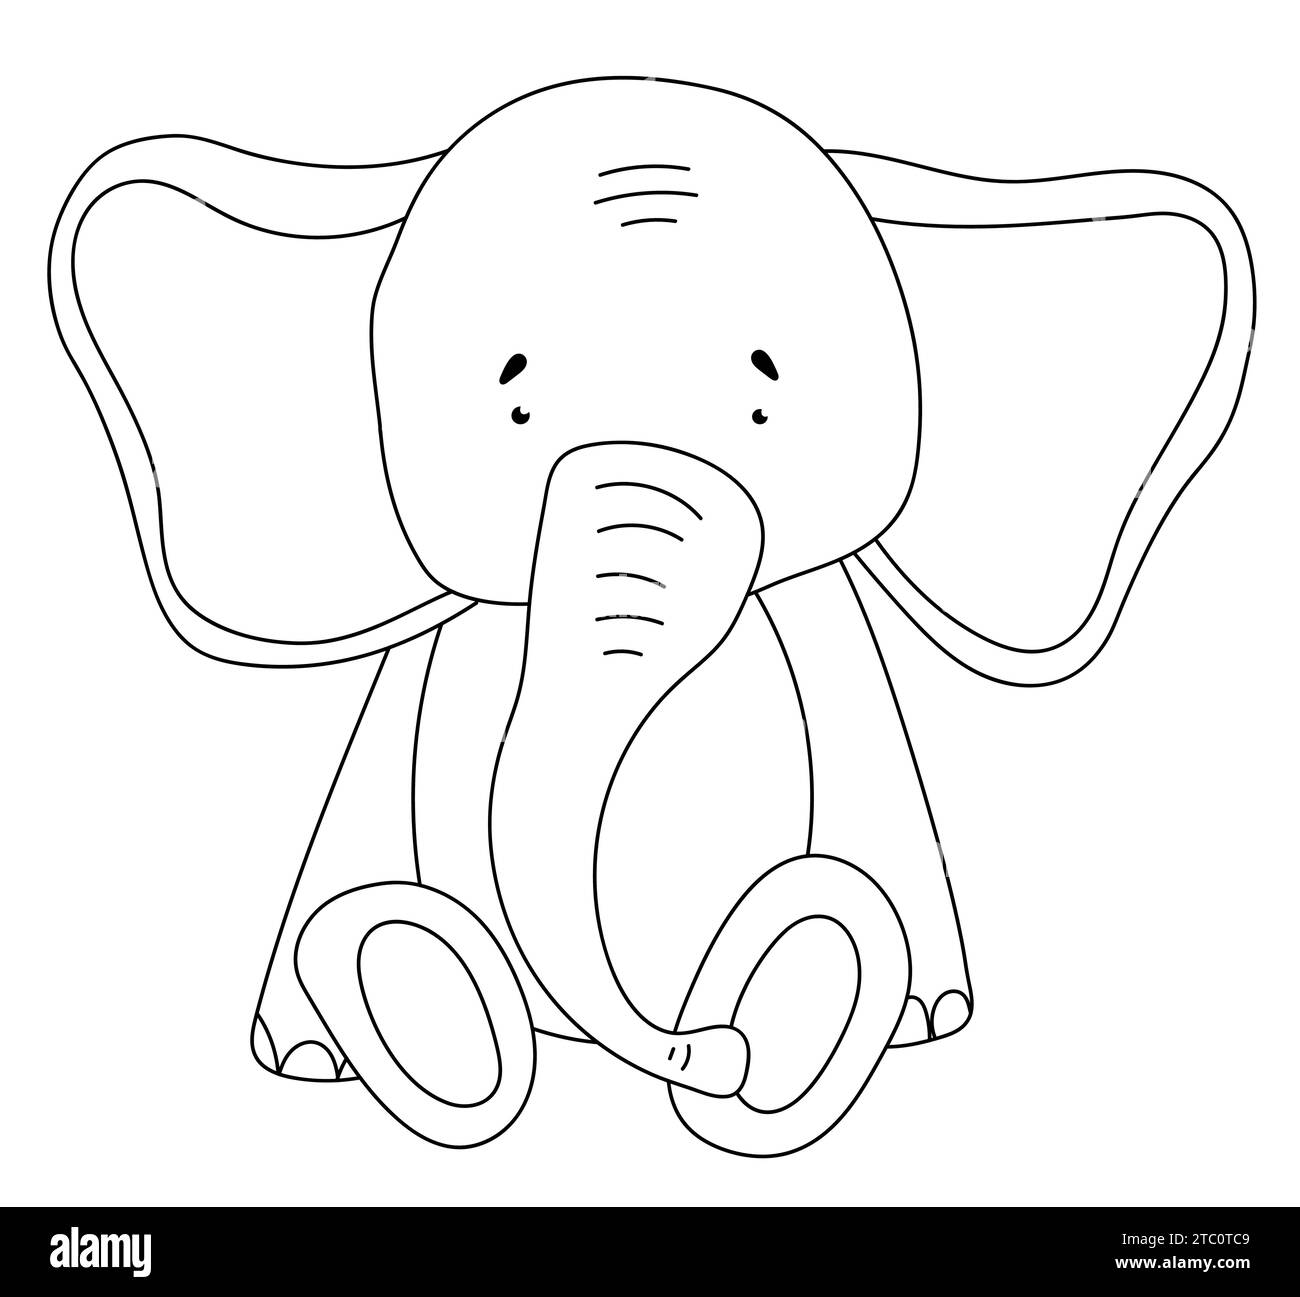 Pagina da colorare per bambini con Un Elefante seduto per il libro da colorare della creatività dei bambini, perfetto per la creatività dei bambini, presentato come Un'illustrazione vettoriale Illustrazione Vettoriale